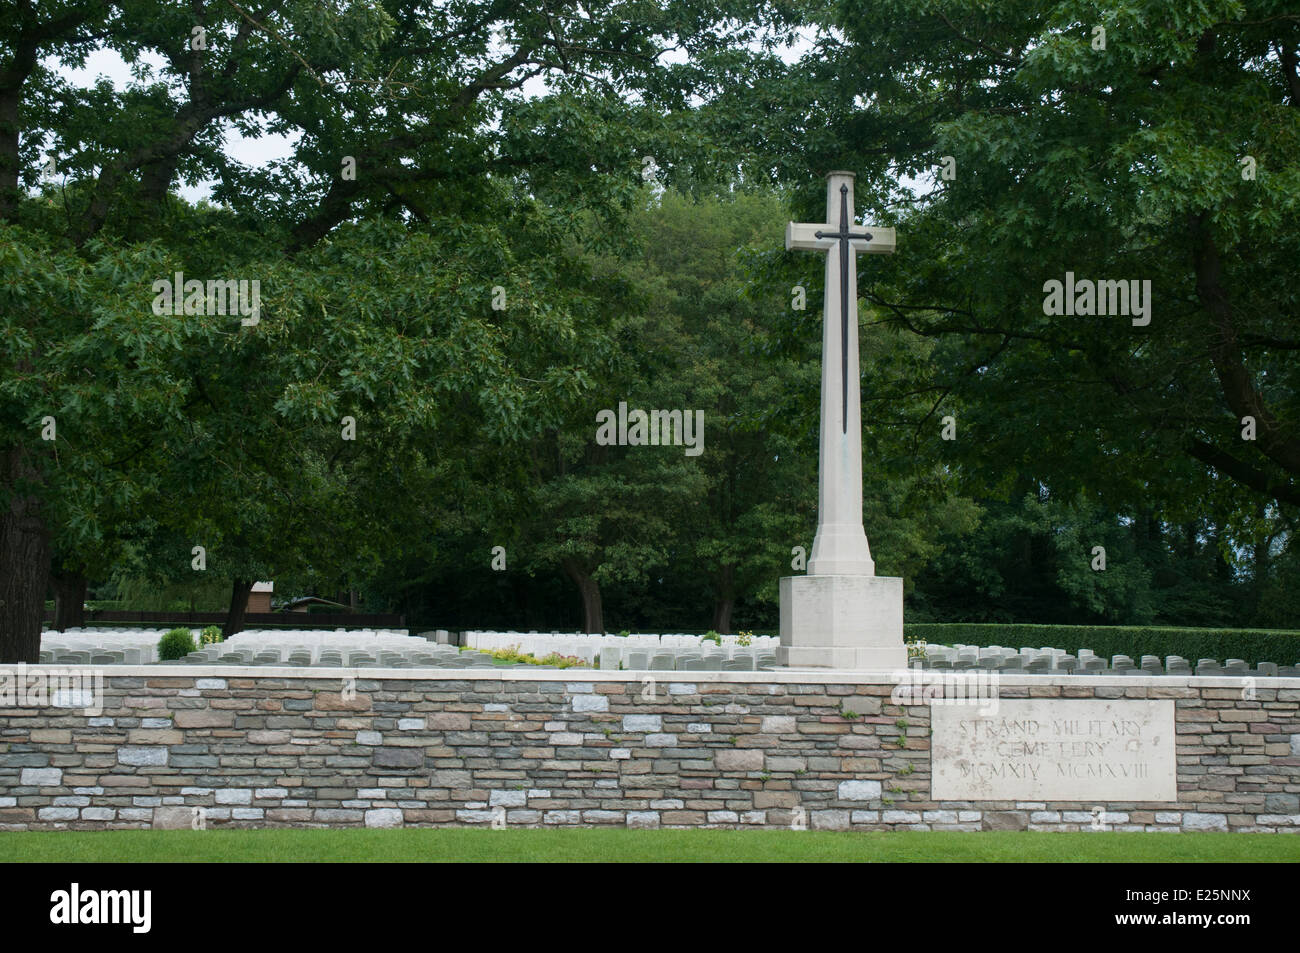 Strand Military Cemetery, Ploegsteert, Belgium Stock Photo